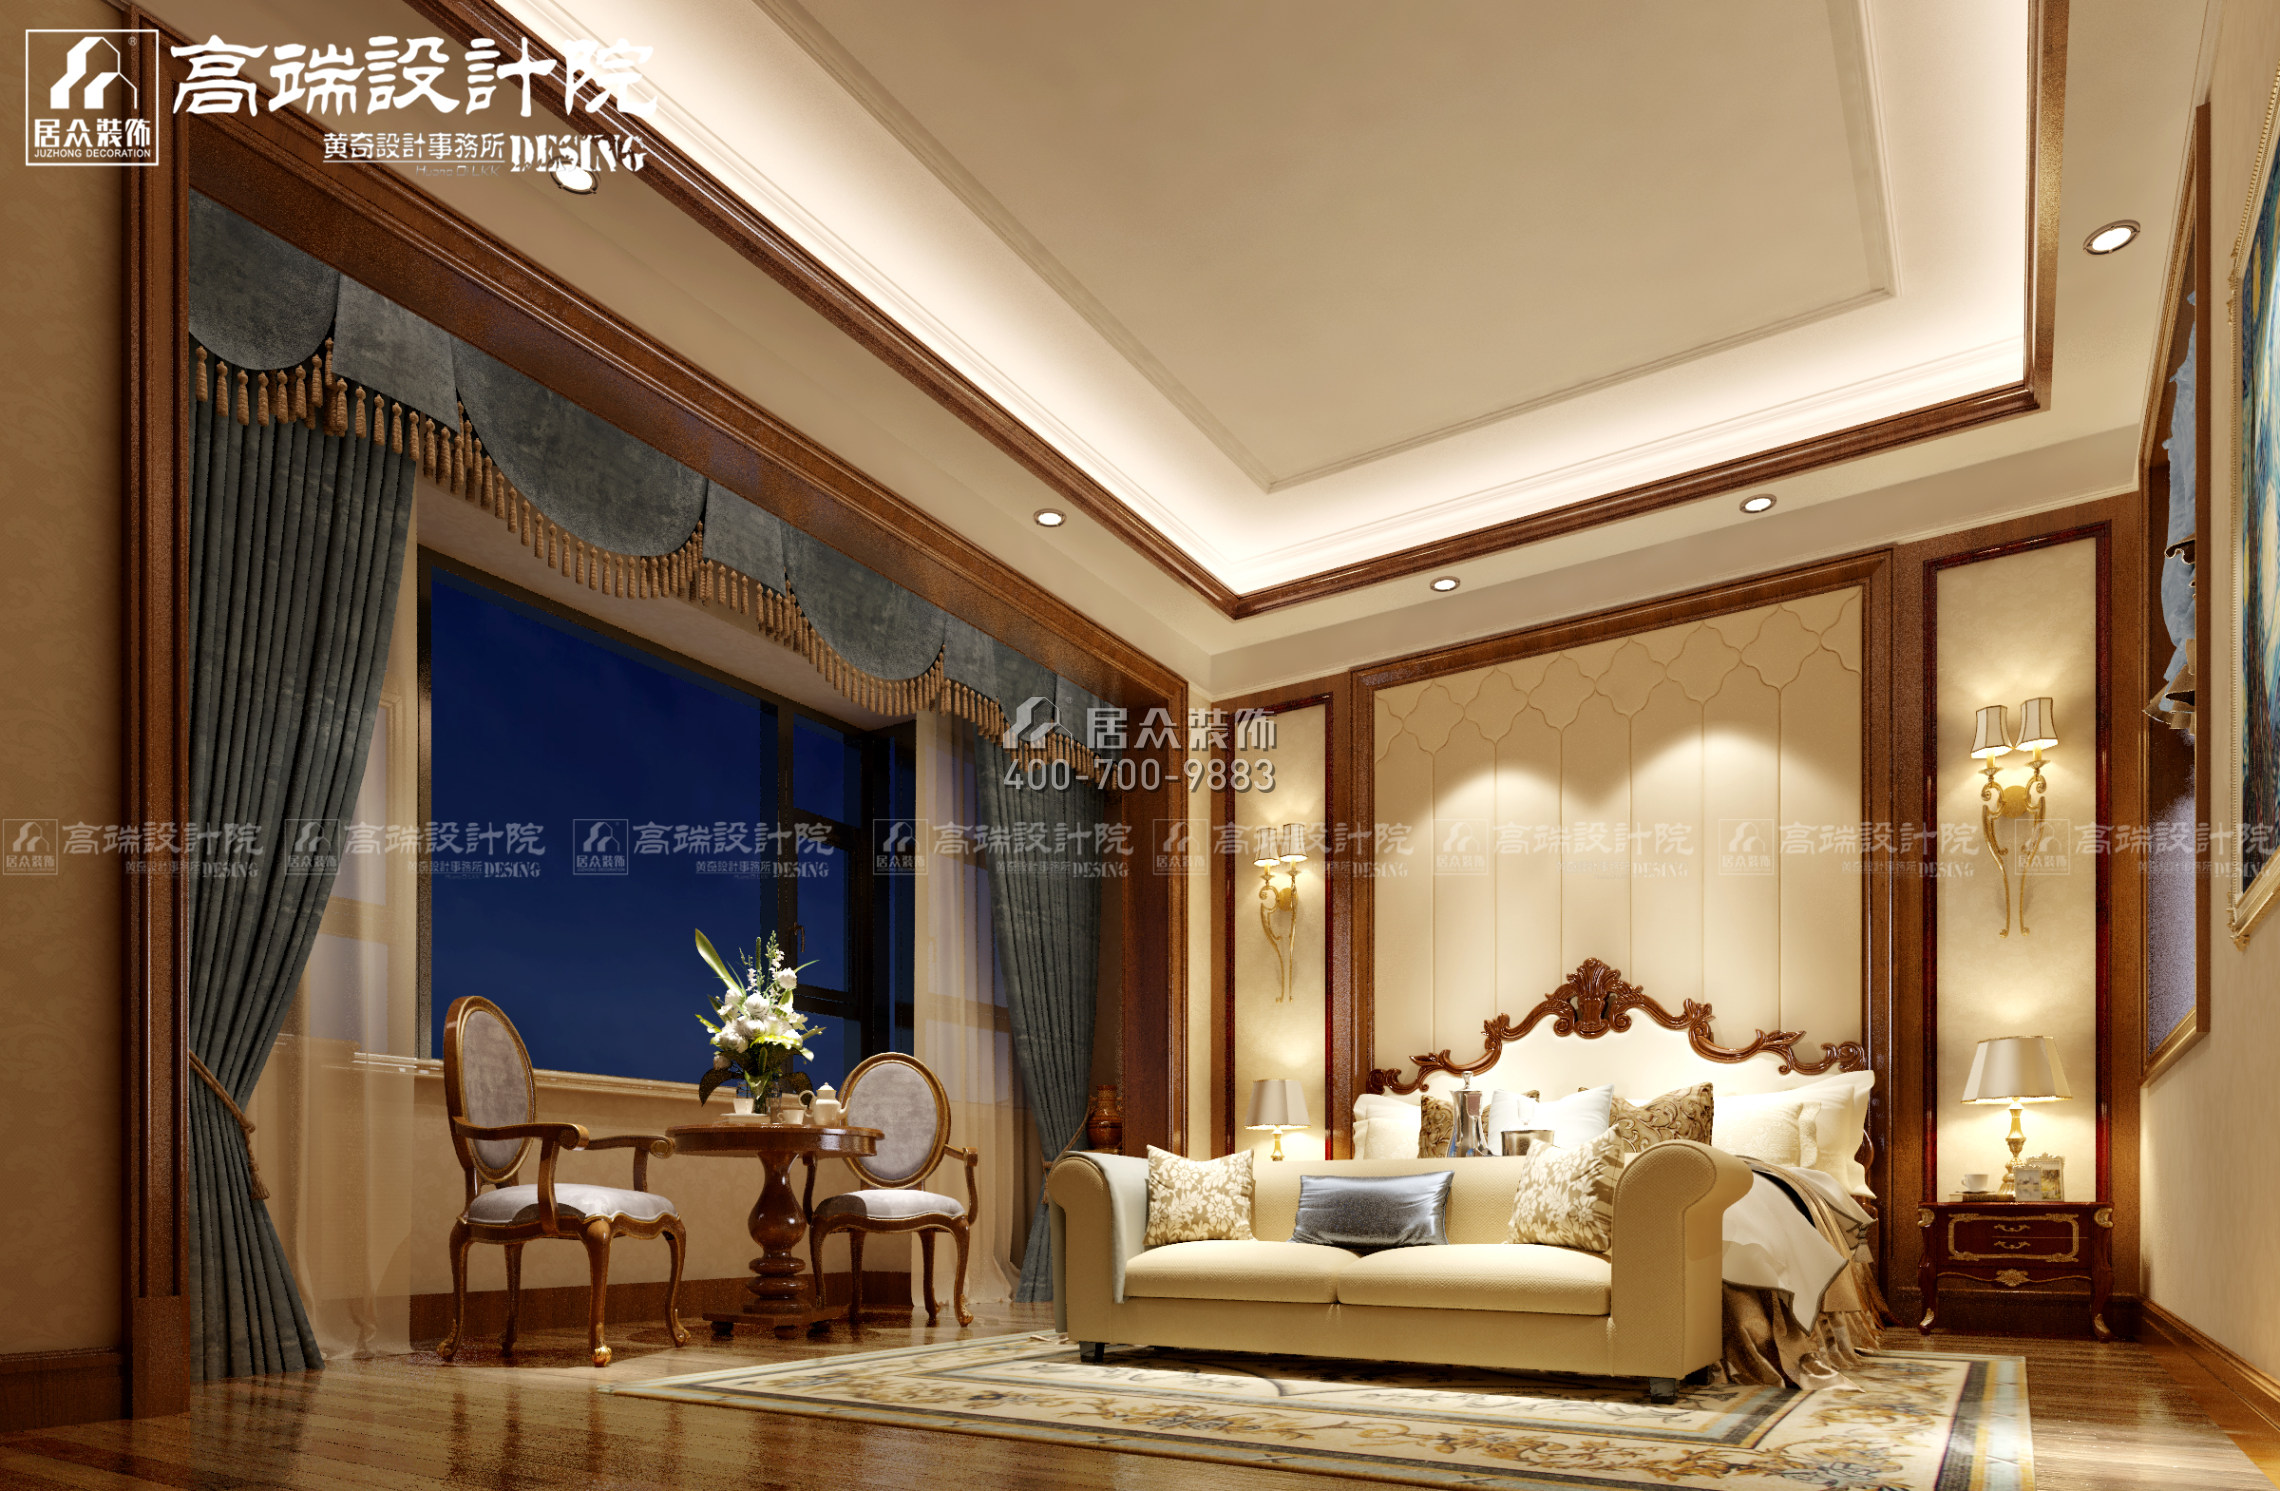 龍湖湘風原著360平方米歐式風格別墅戶型臥室裝修效果圖